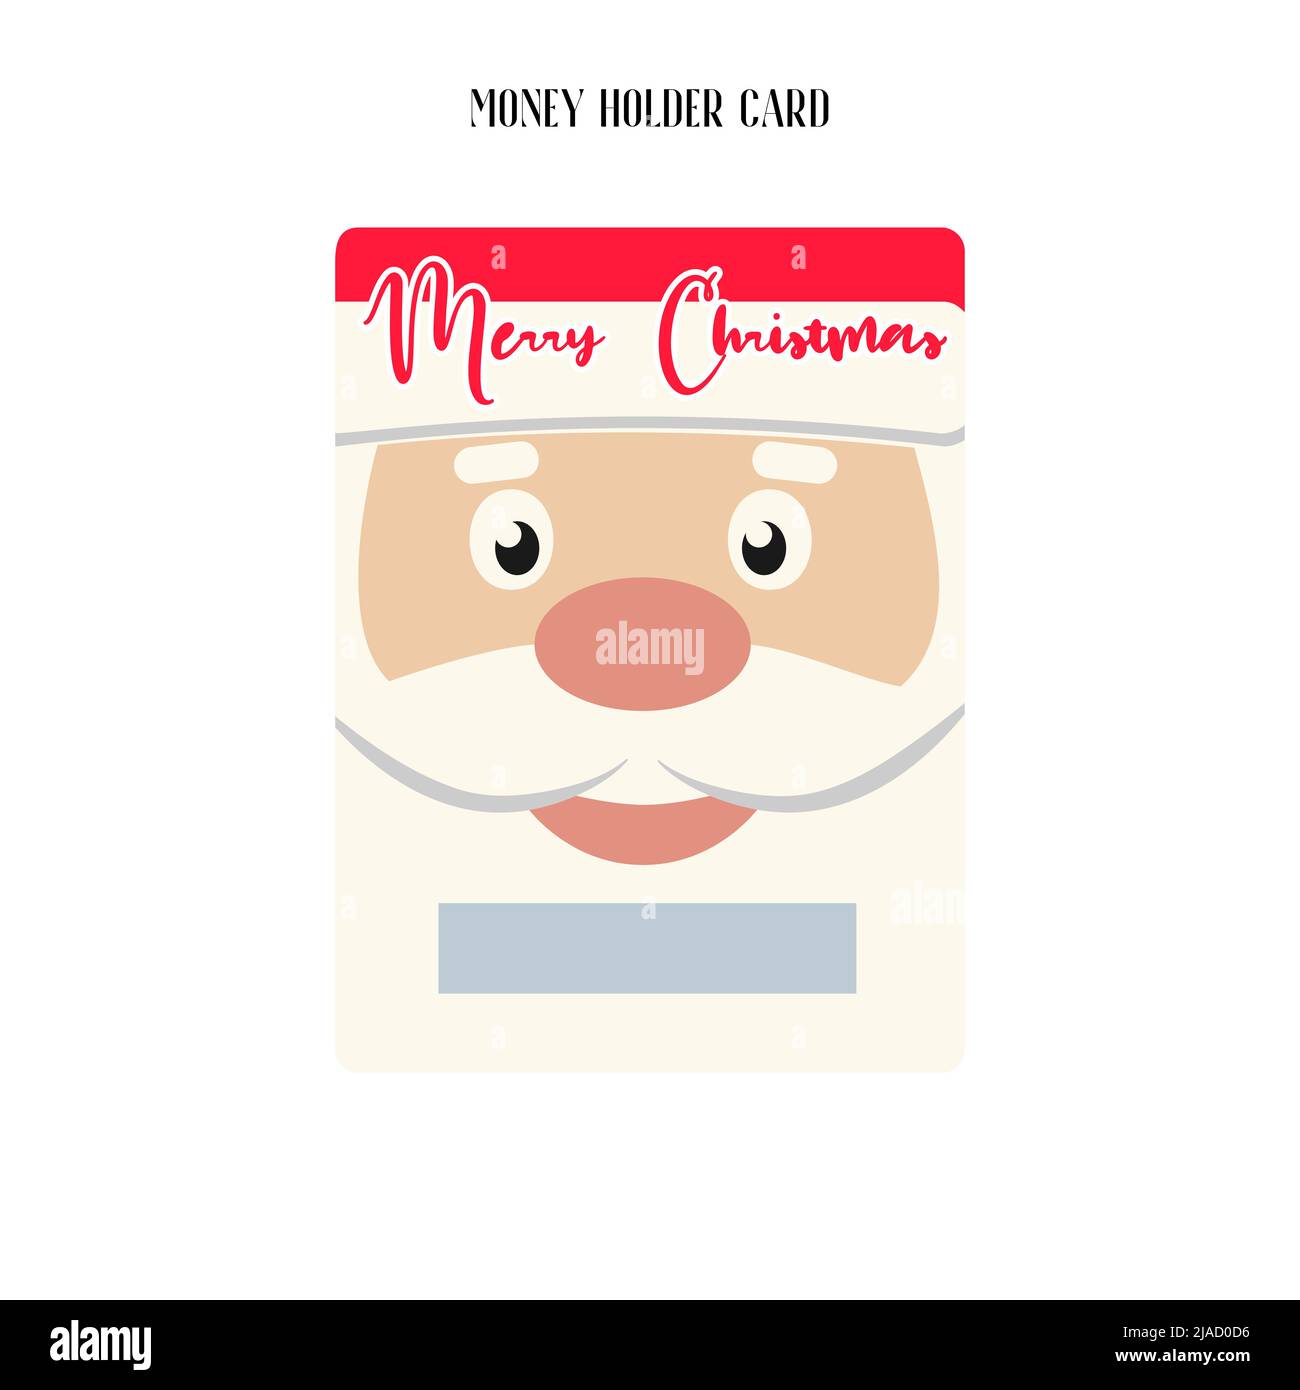 Printable Christmas Money Holder, Gift card, Cash Money Holder template. Stock Vector